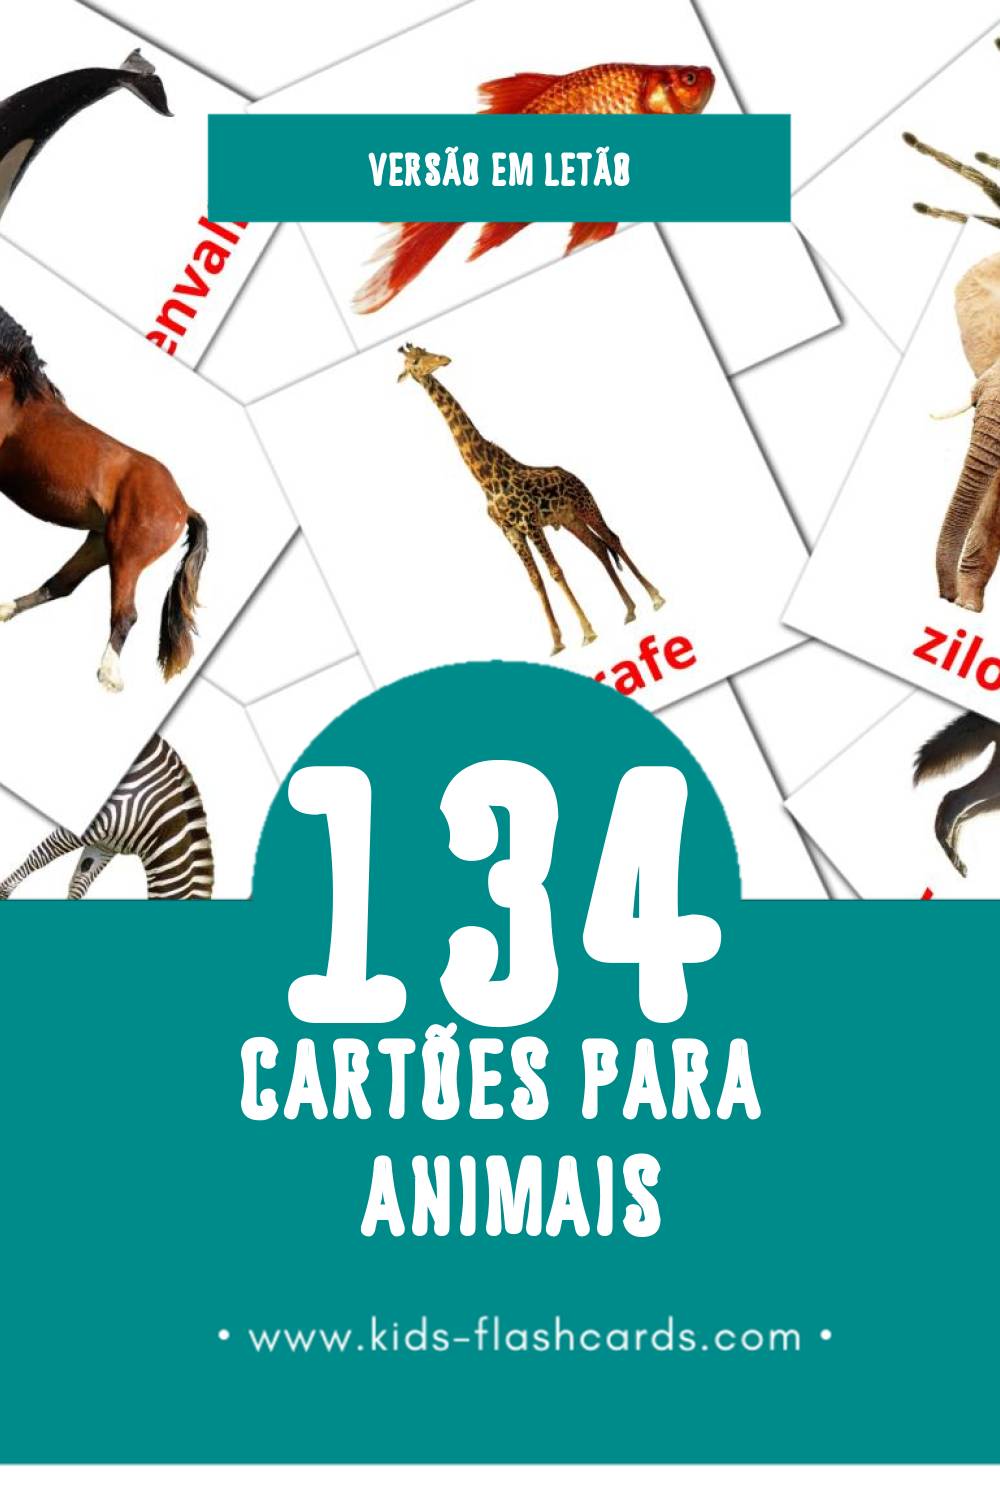 Flashcards de Dzīvnieki Visuais para Toddlers (134 cartões em Letão)